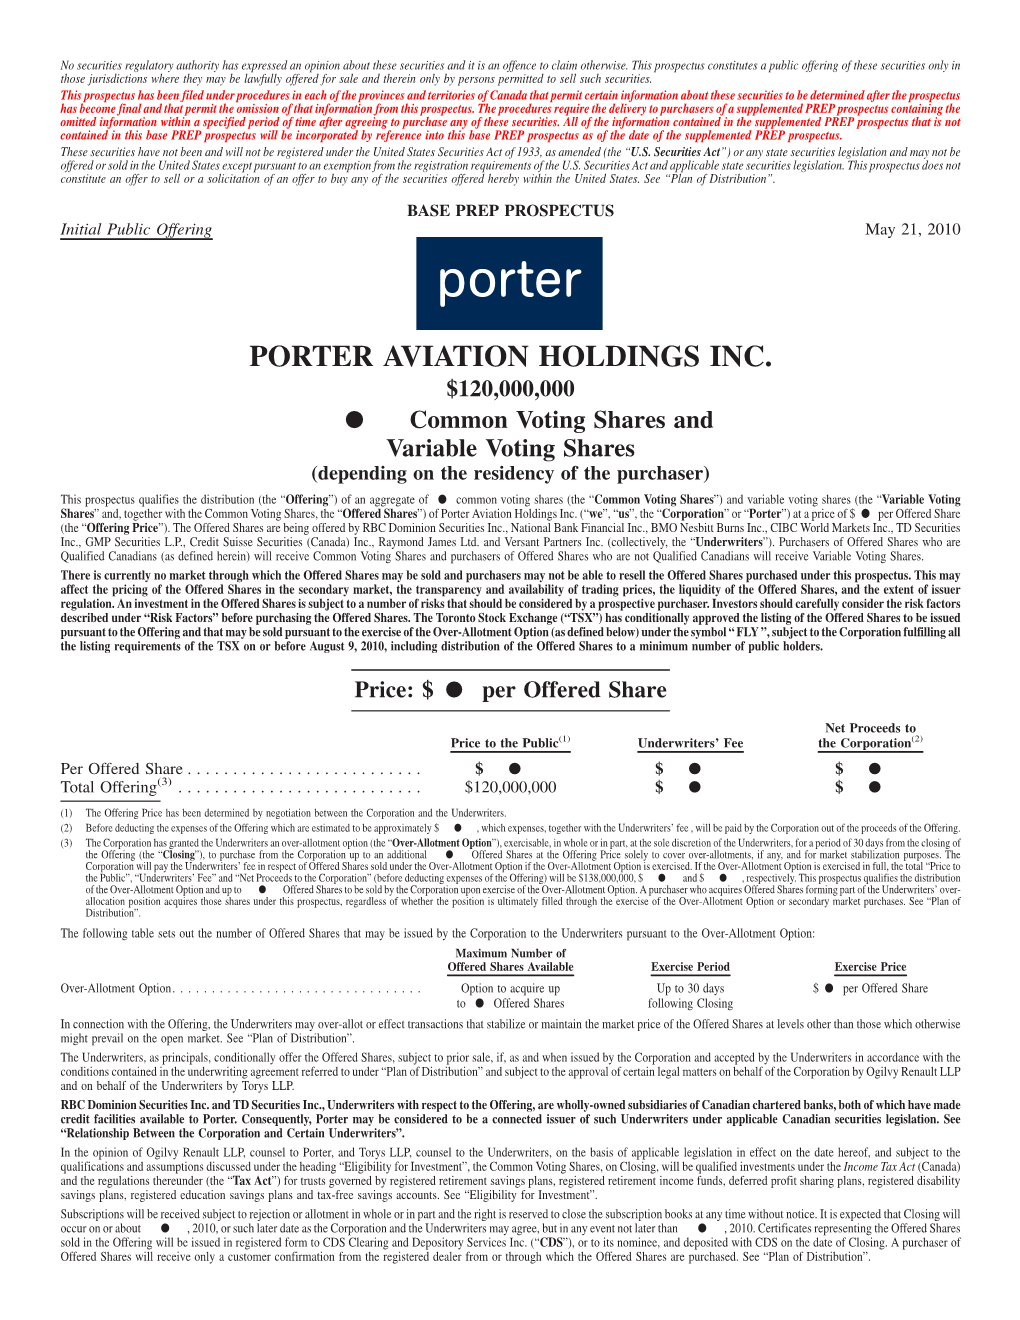 Porter Aviation Holdings Inc